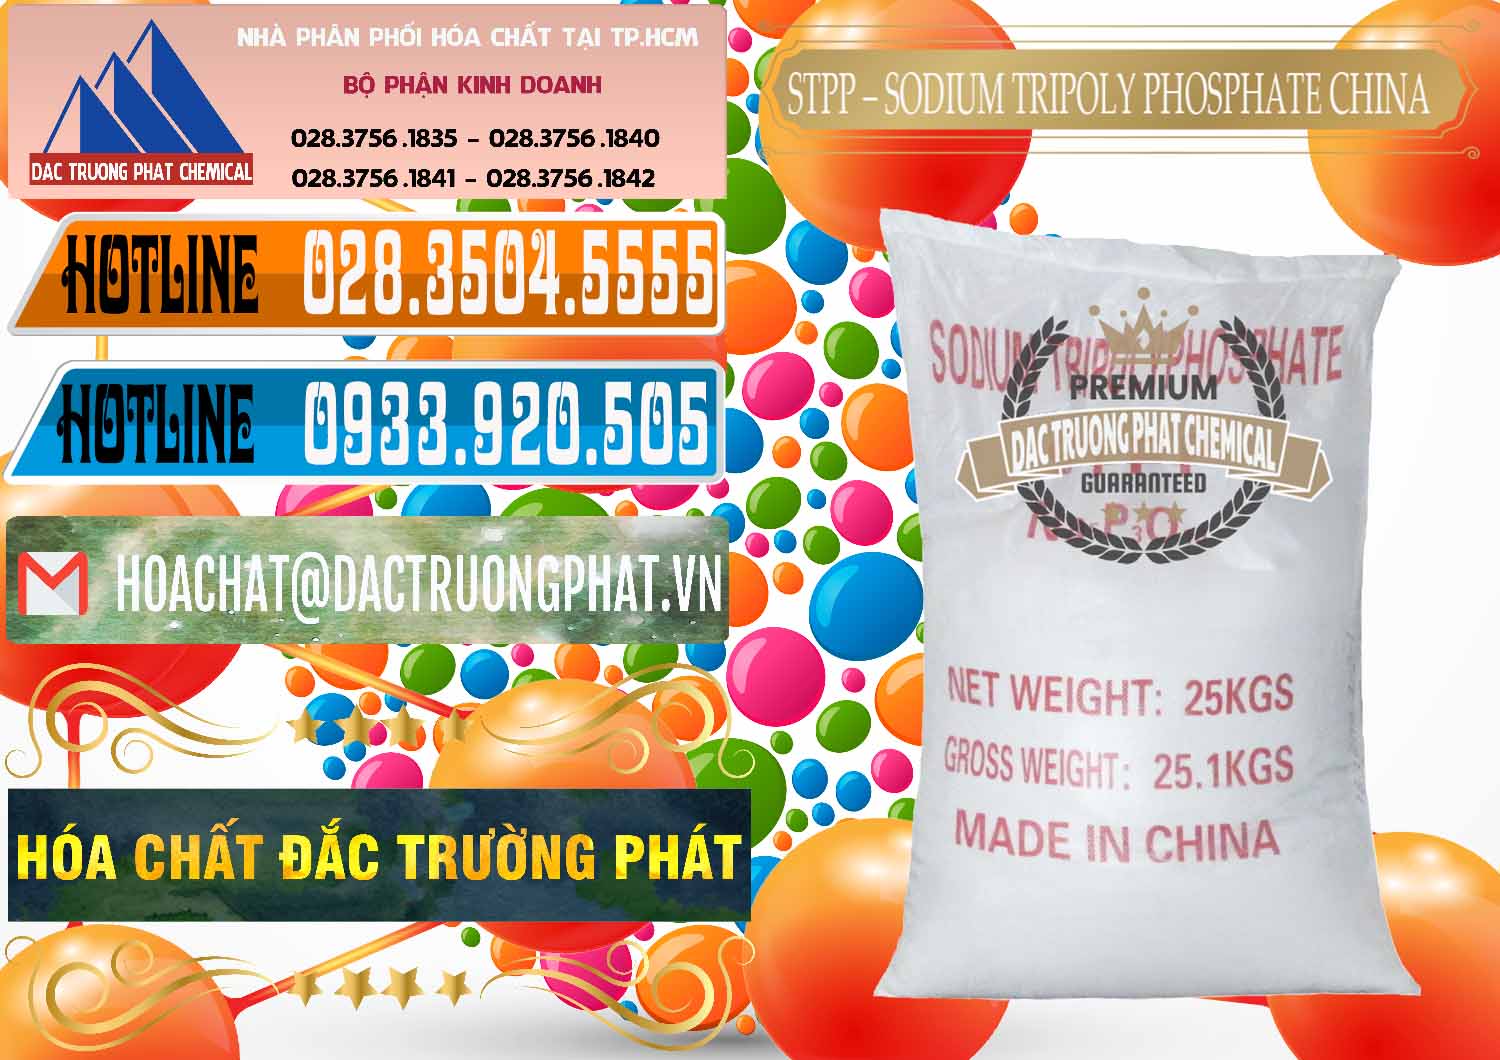 Công ty chuyên bán & cung cấp Sodium Tripoly Phosphate - STPP 96% Chữ Đỏ Trung Quốc China - 0155 - Chuyên phân phối ( bán ) hóa chất tại TP.HCM - stmp.net